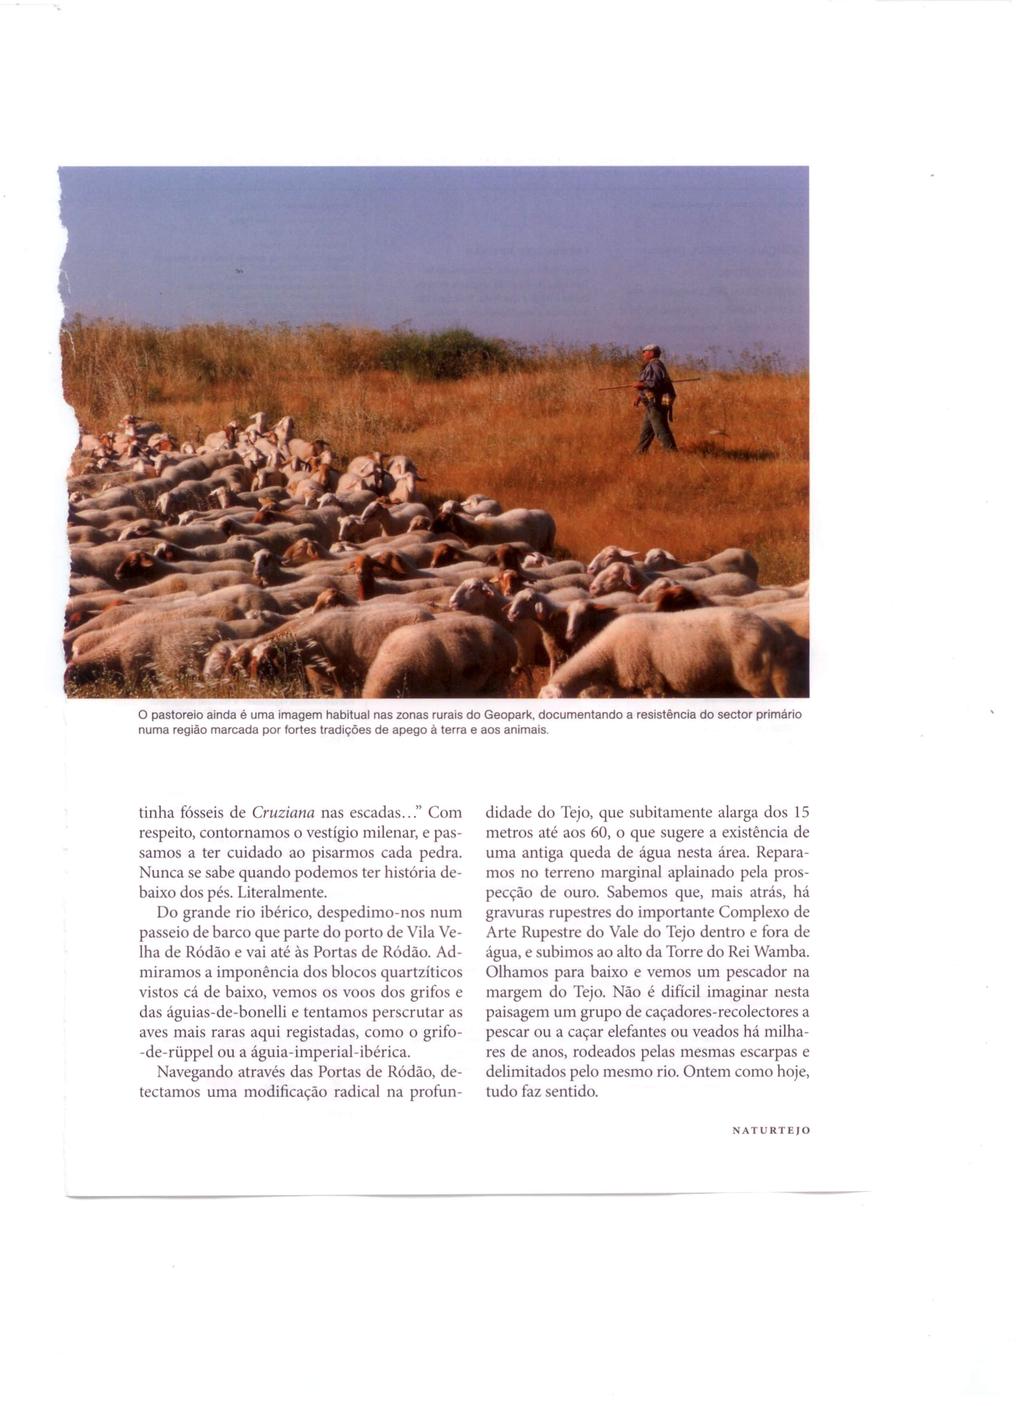 o pastoreio ainda é uma imagem habitual nas zonas rurais do Geopark, documentando numa região marcada por fortes tradições de apego à terra e aos animais.